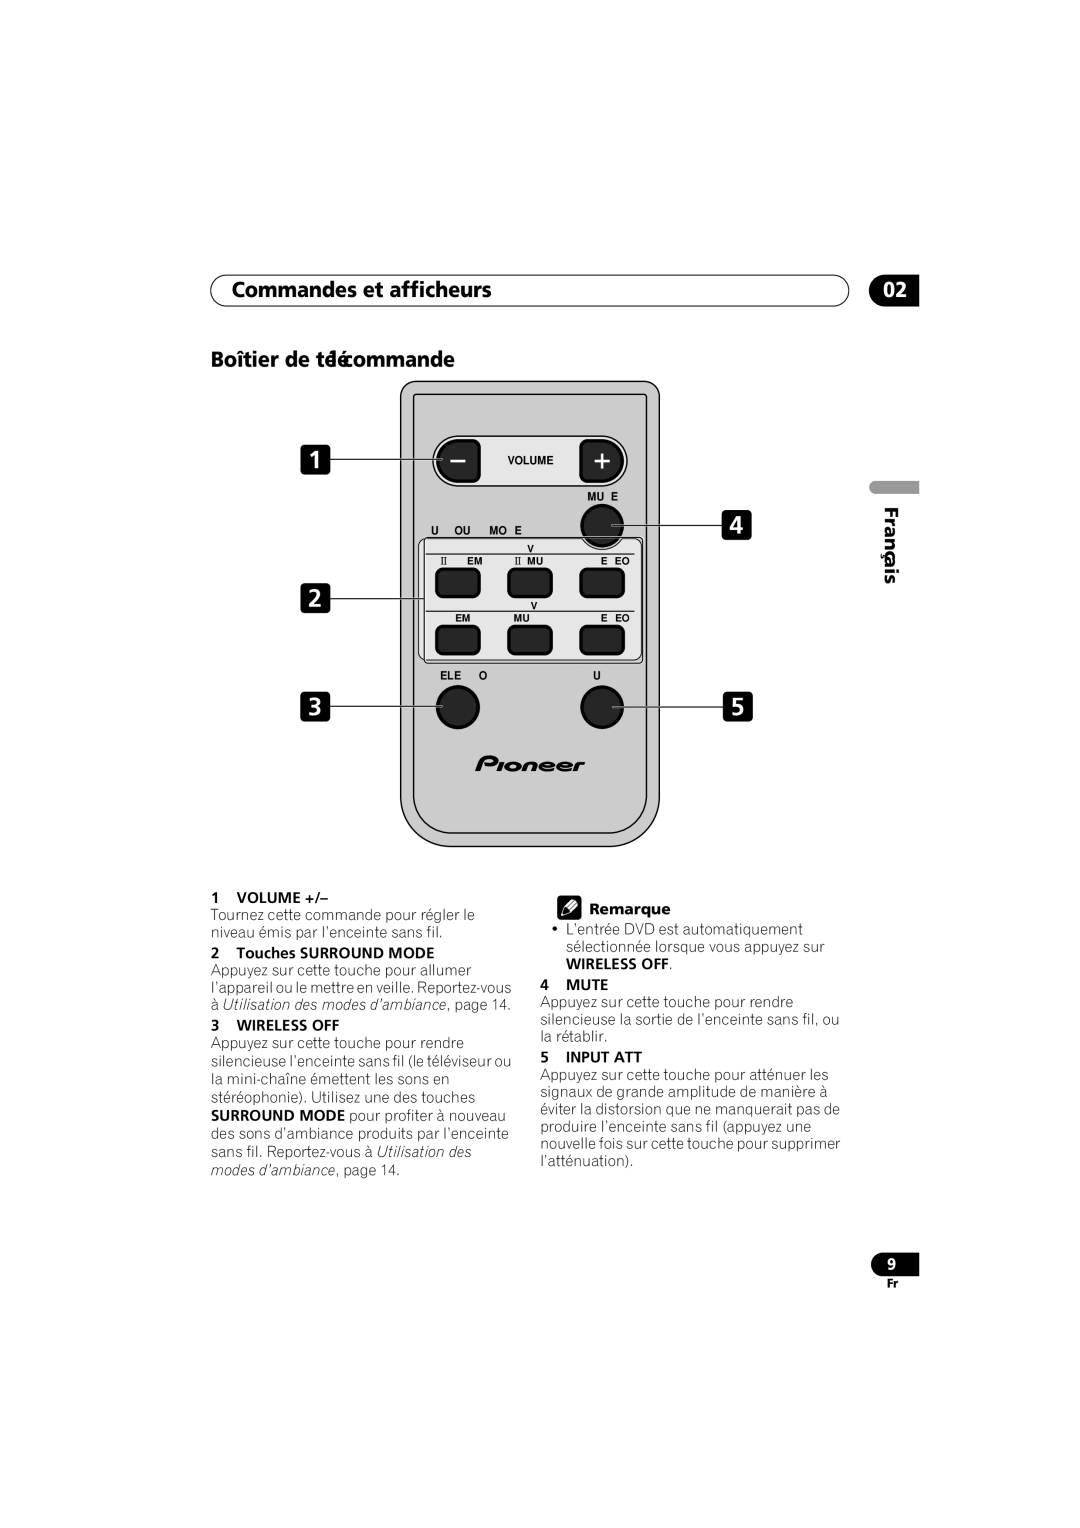 Pioneer XW-HT1 Commandes et afficheurs Boîtier de télécommande, Français, Volume +, 3WIRELESS OFF, Remarque, Input Att 